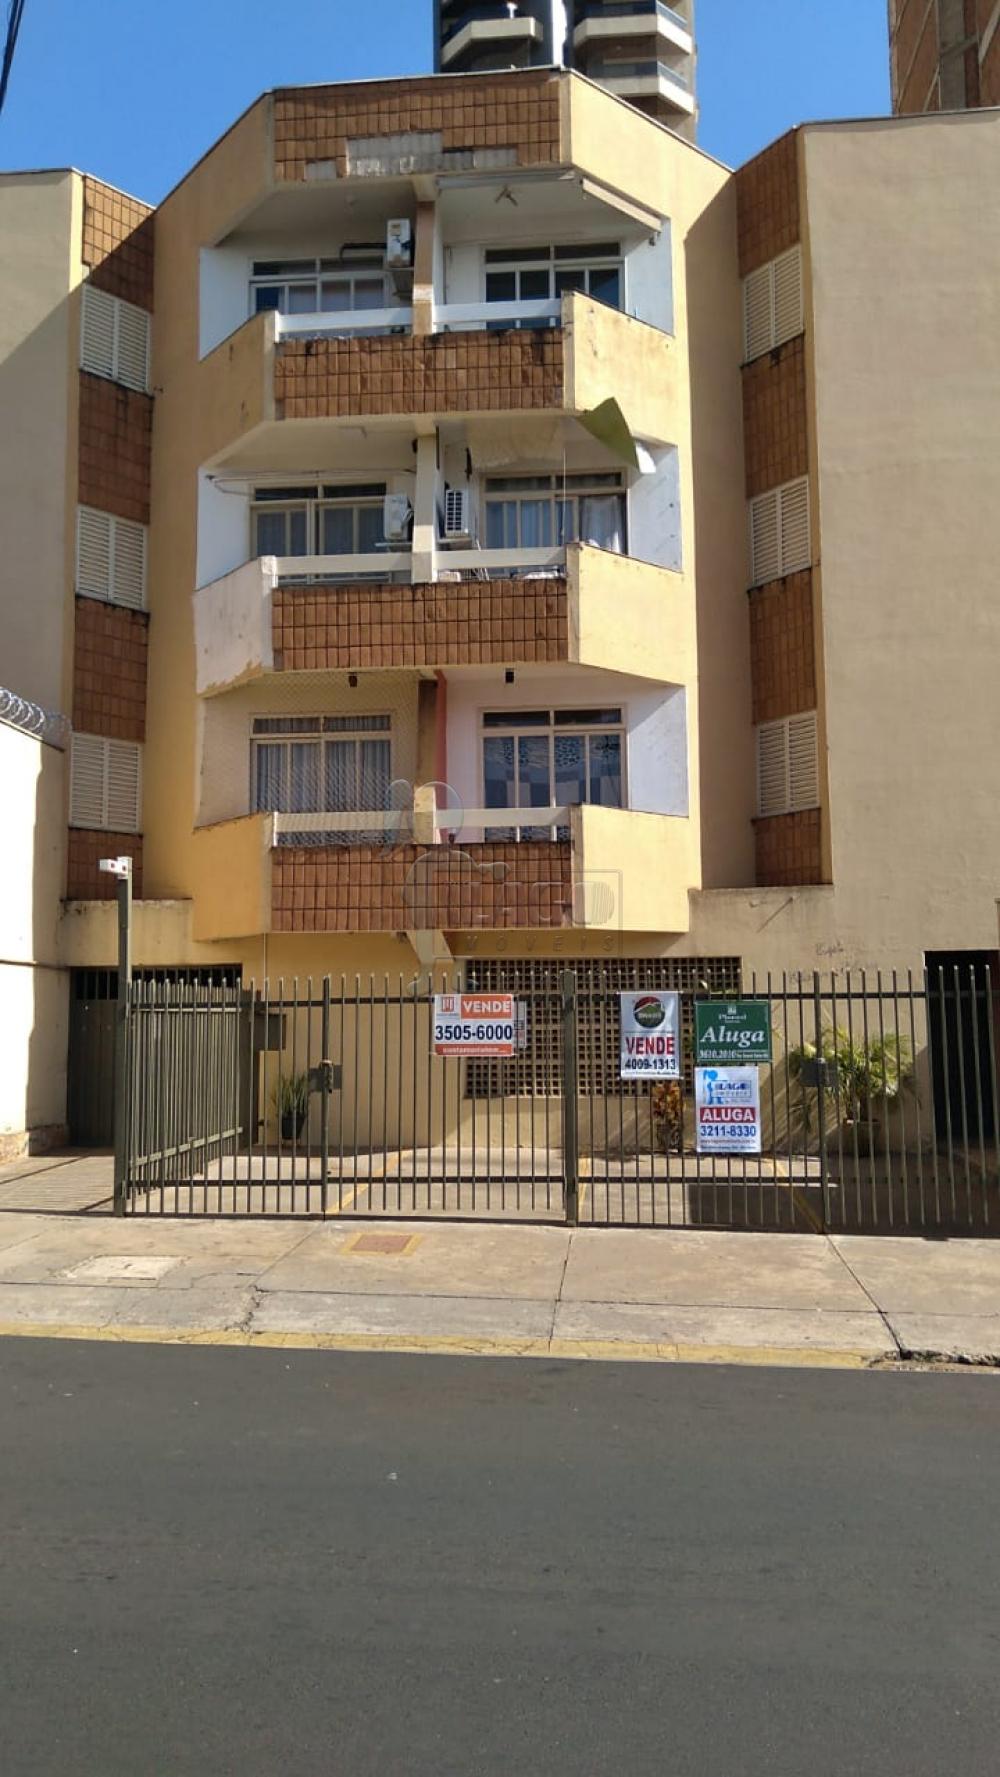 Alugar Apartamento / Padrão em Ribeirão Preto R$ 800,00 - Foto 13